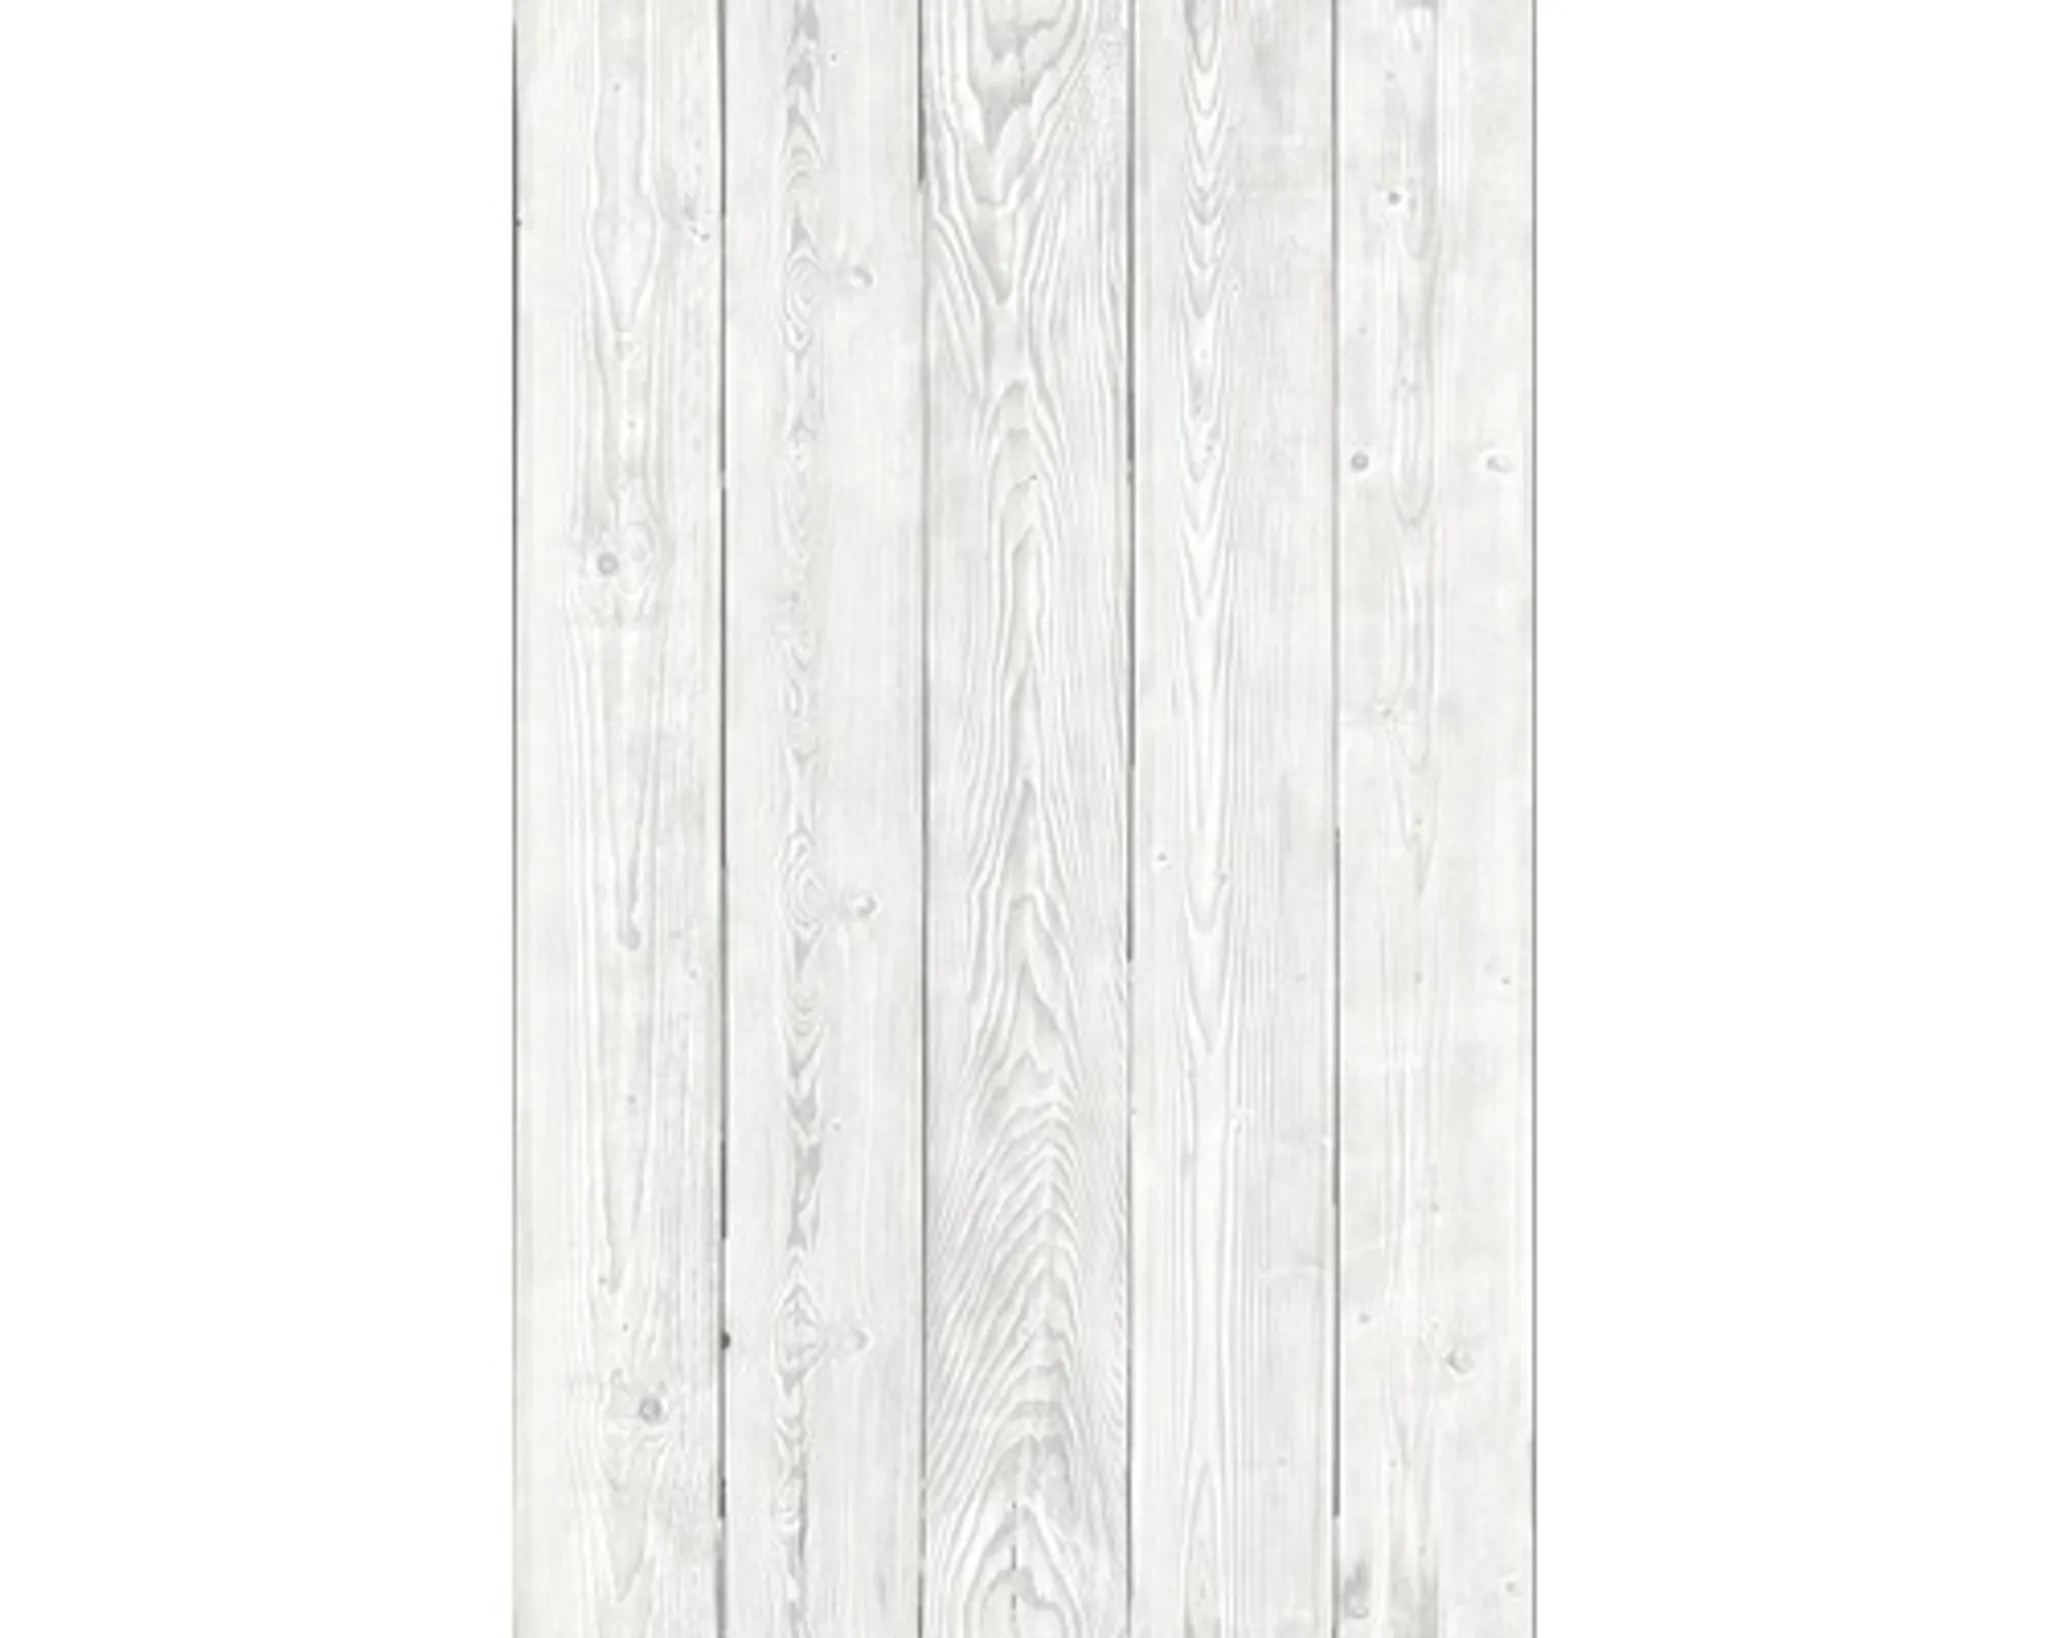 Klebefolie Holzoptik Scrapwood grau - Möbelfolie Dekorfolie 45x200 cm